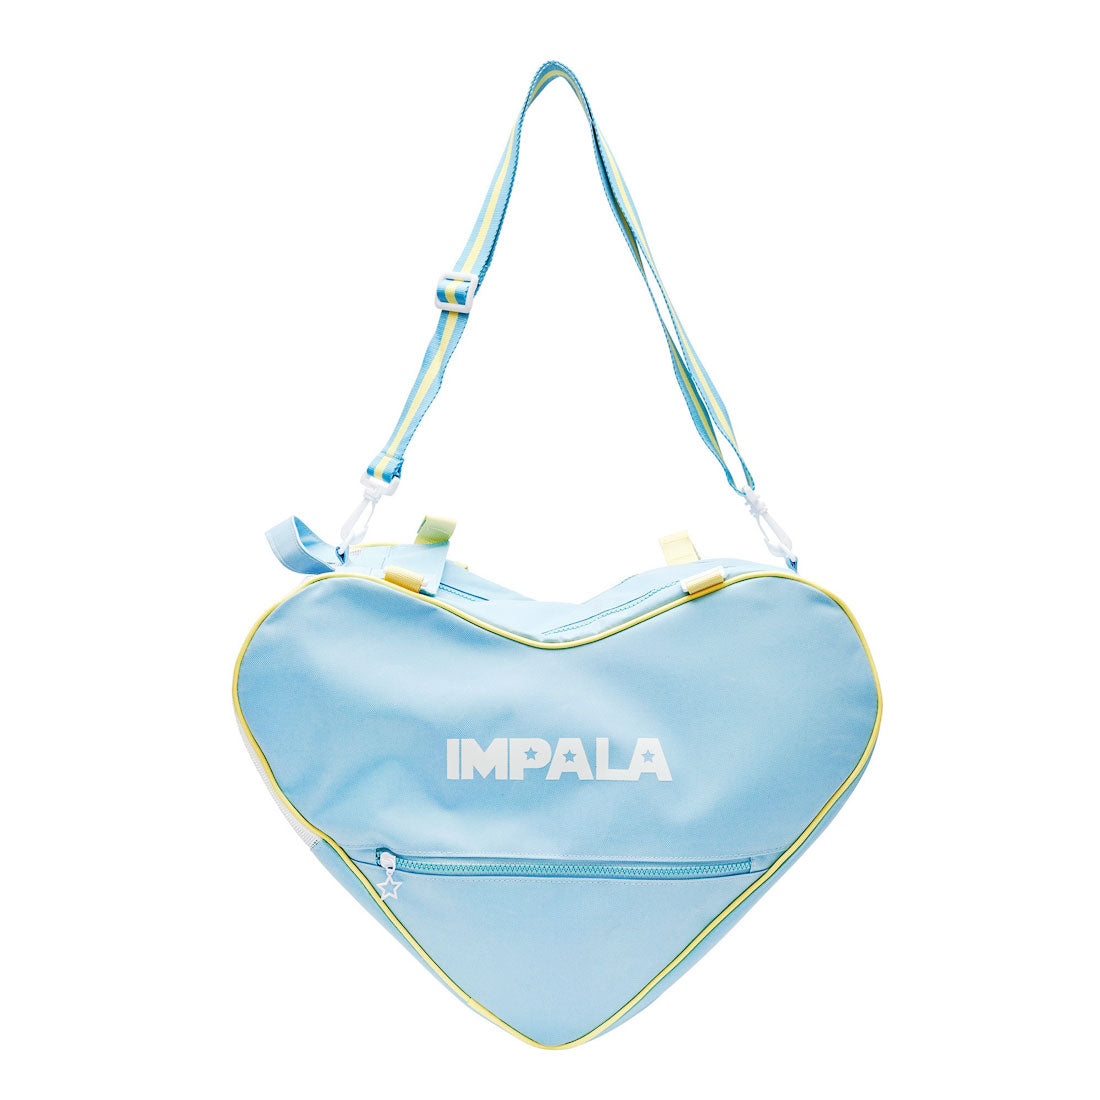 Impala Skate Bag - Sky Blue Bags and Backpacks